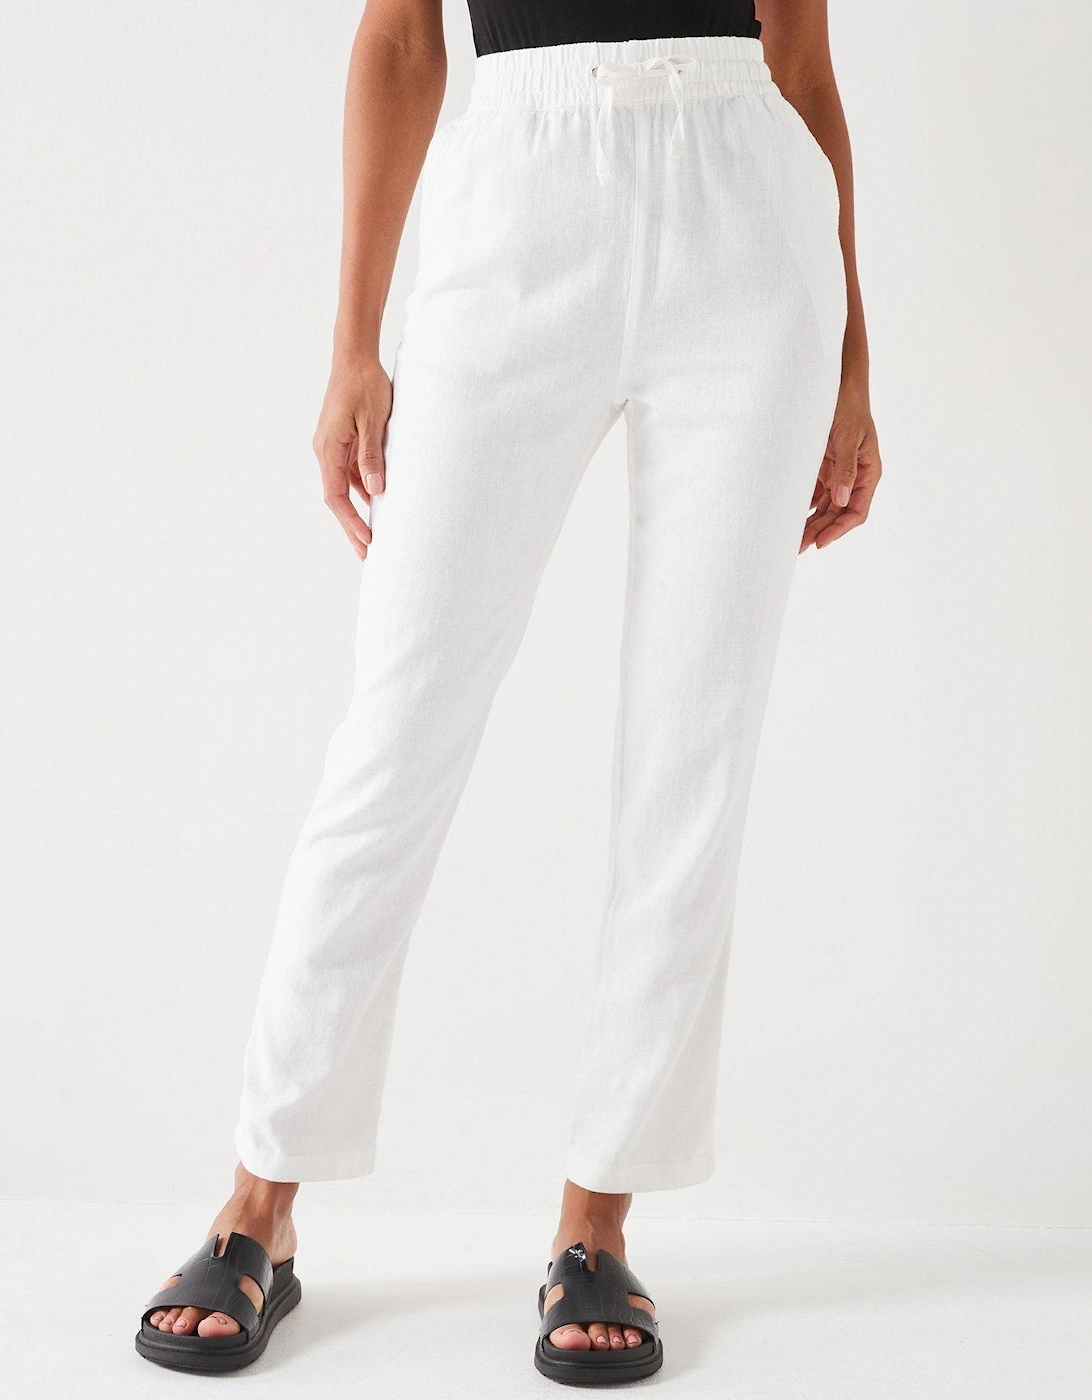 Short Linen Blend Trousers - White, 2 of 1